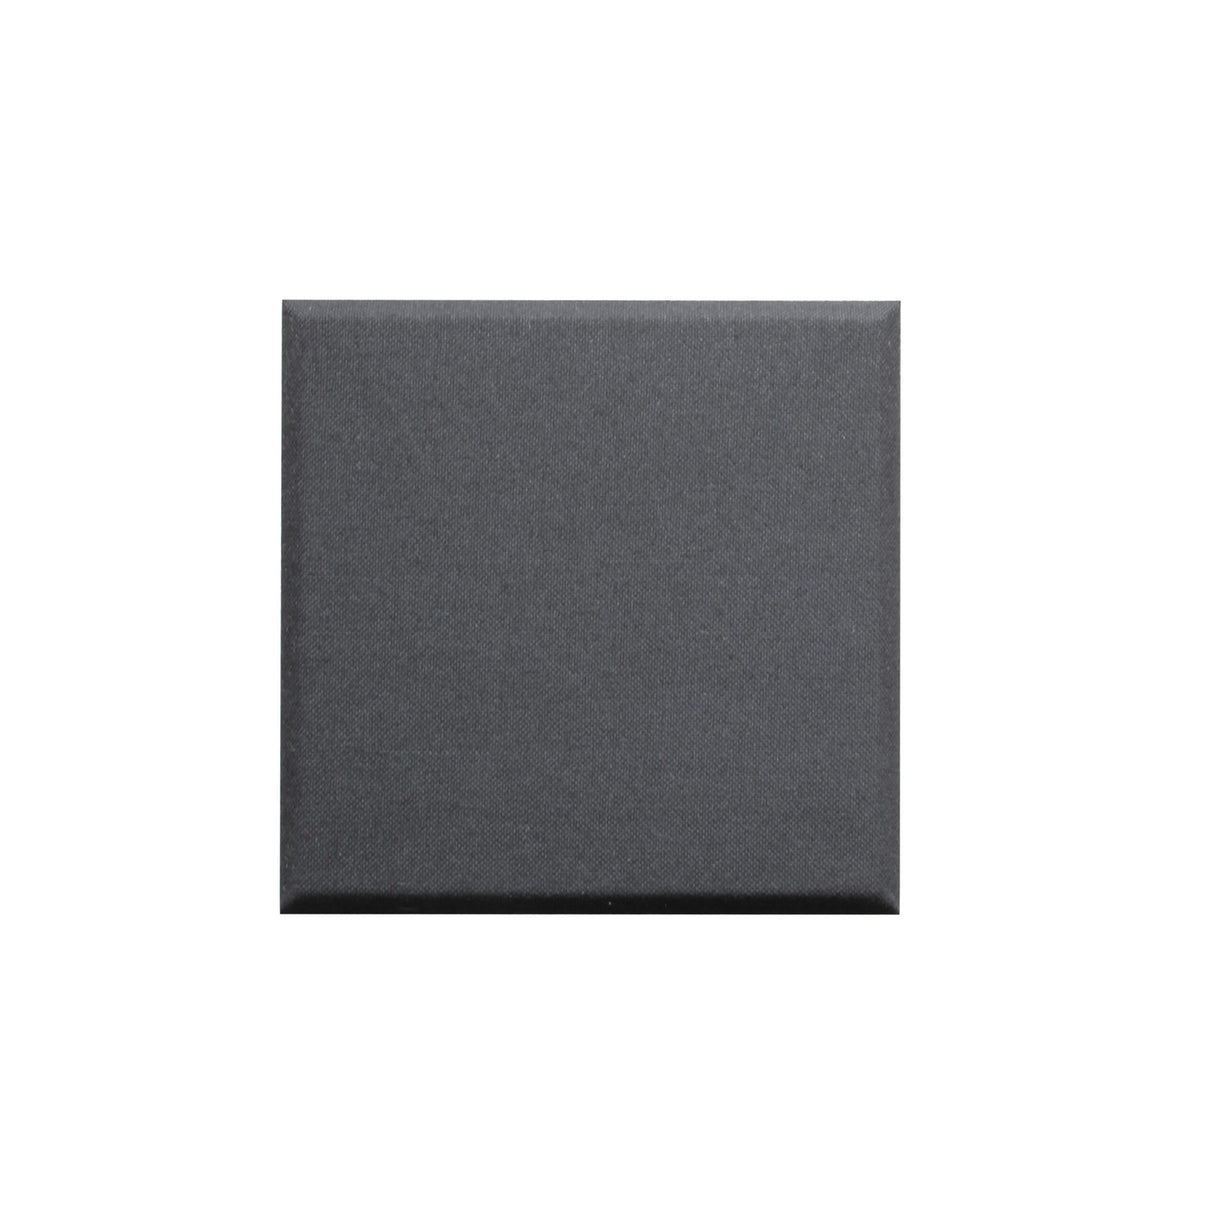 Primacoustic Control Cube 24 x 24 x 2-Inch Acoustic Panels, Black 12-Set, Square Edge